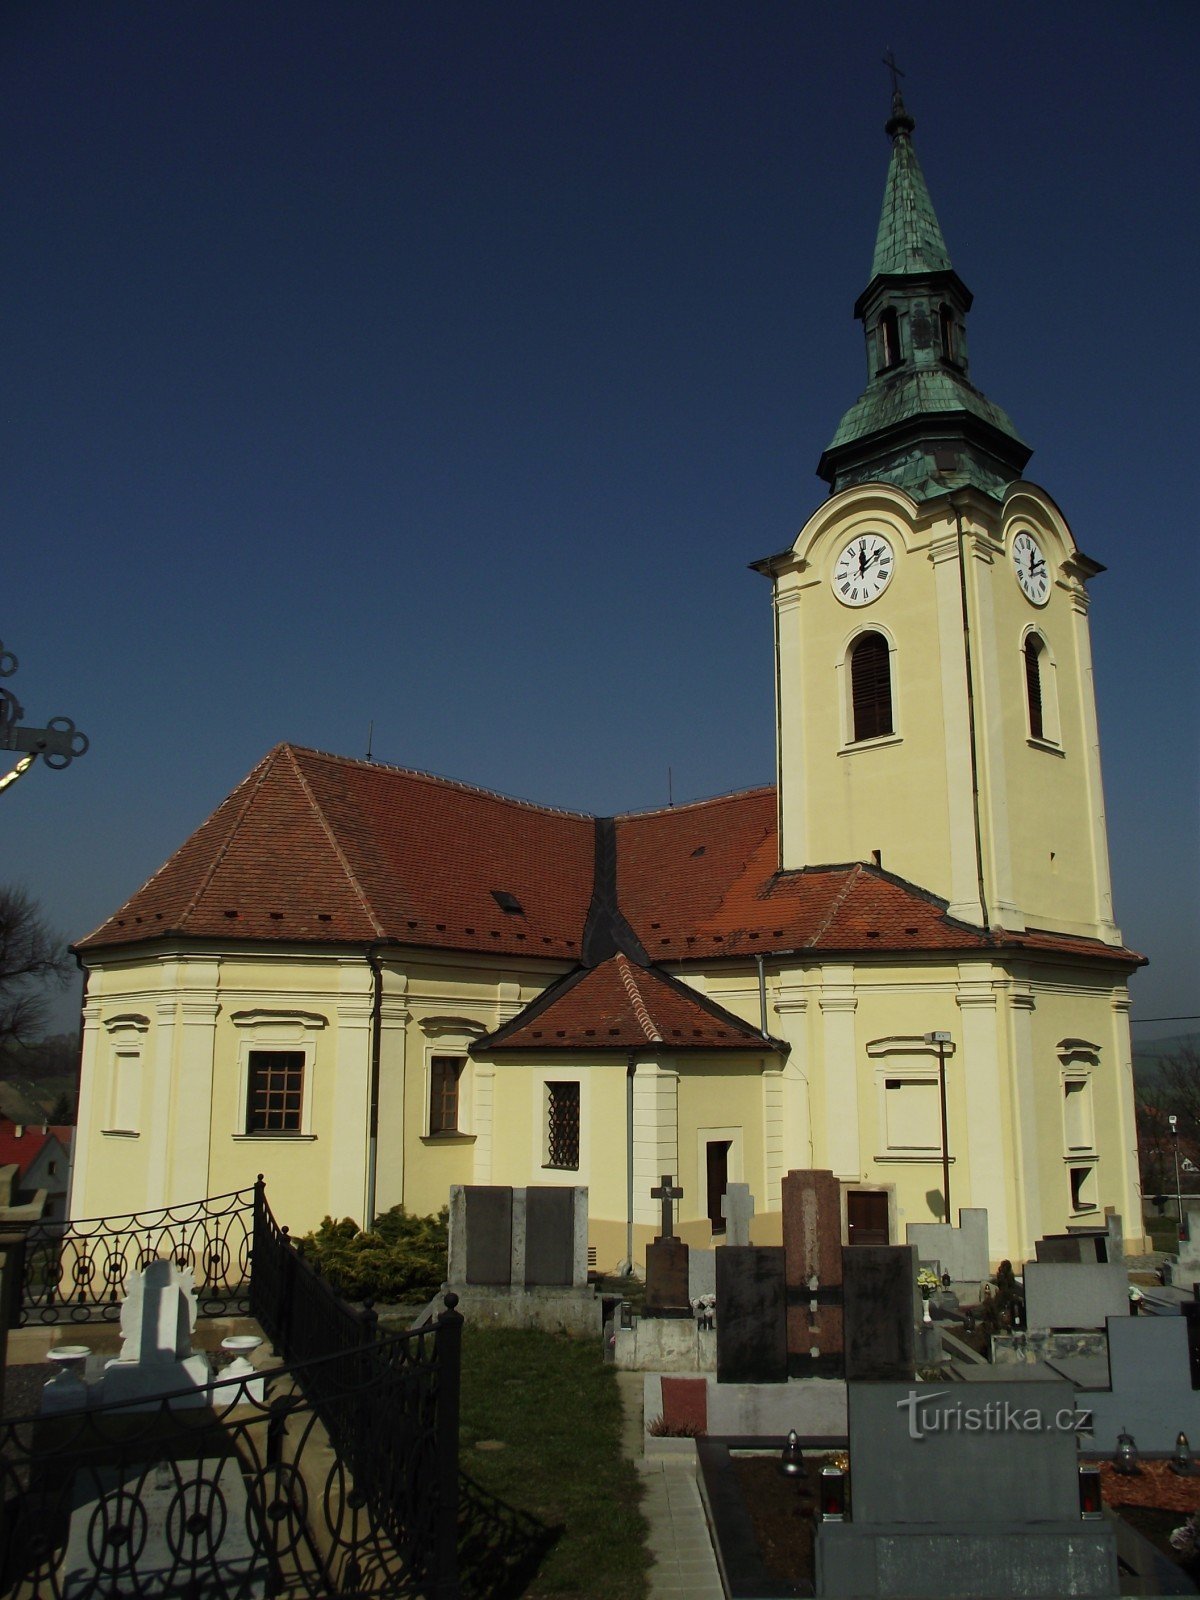 Bílovice - nhà thờ St. John the Baptist